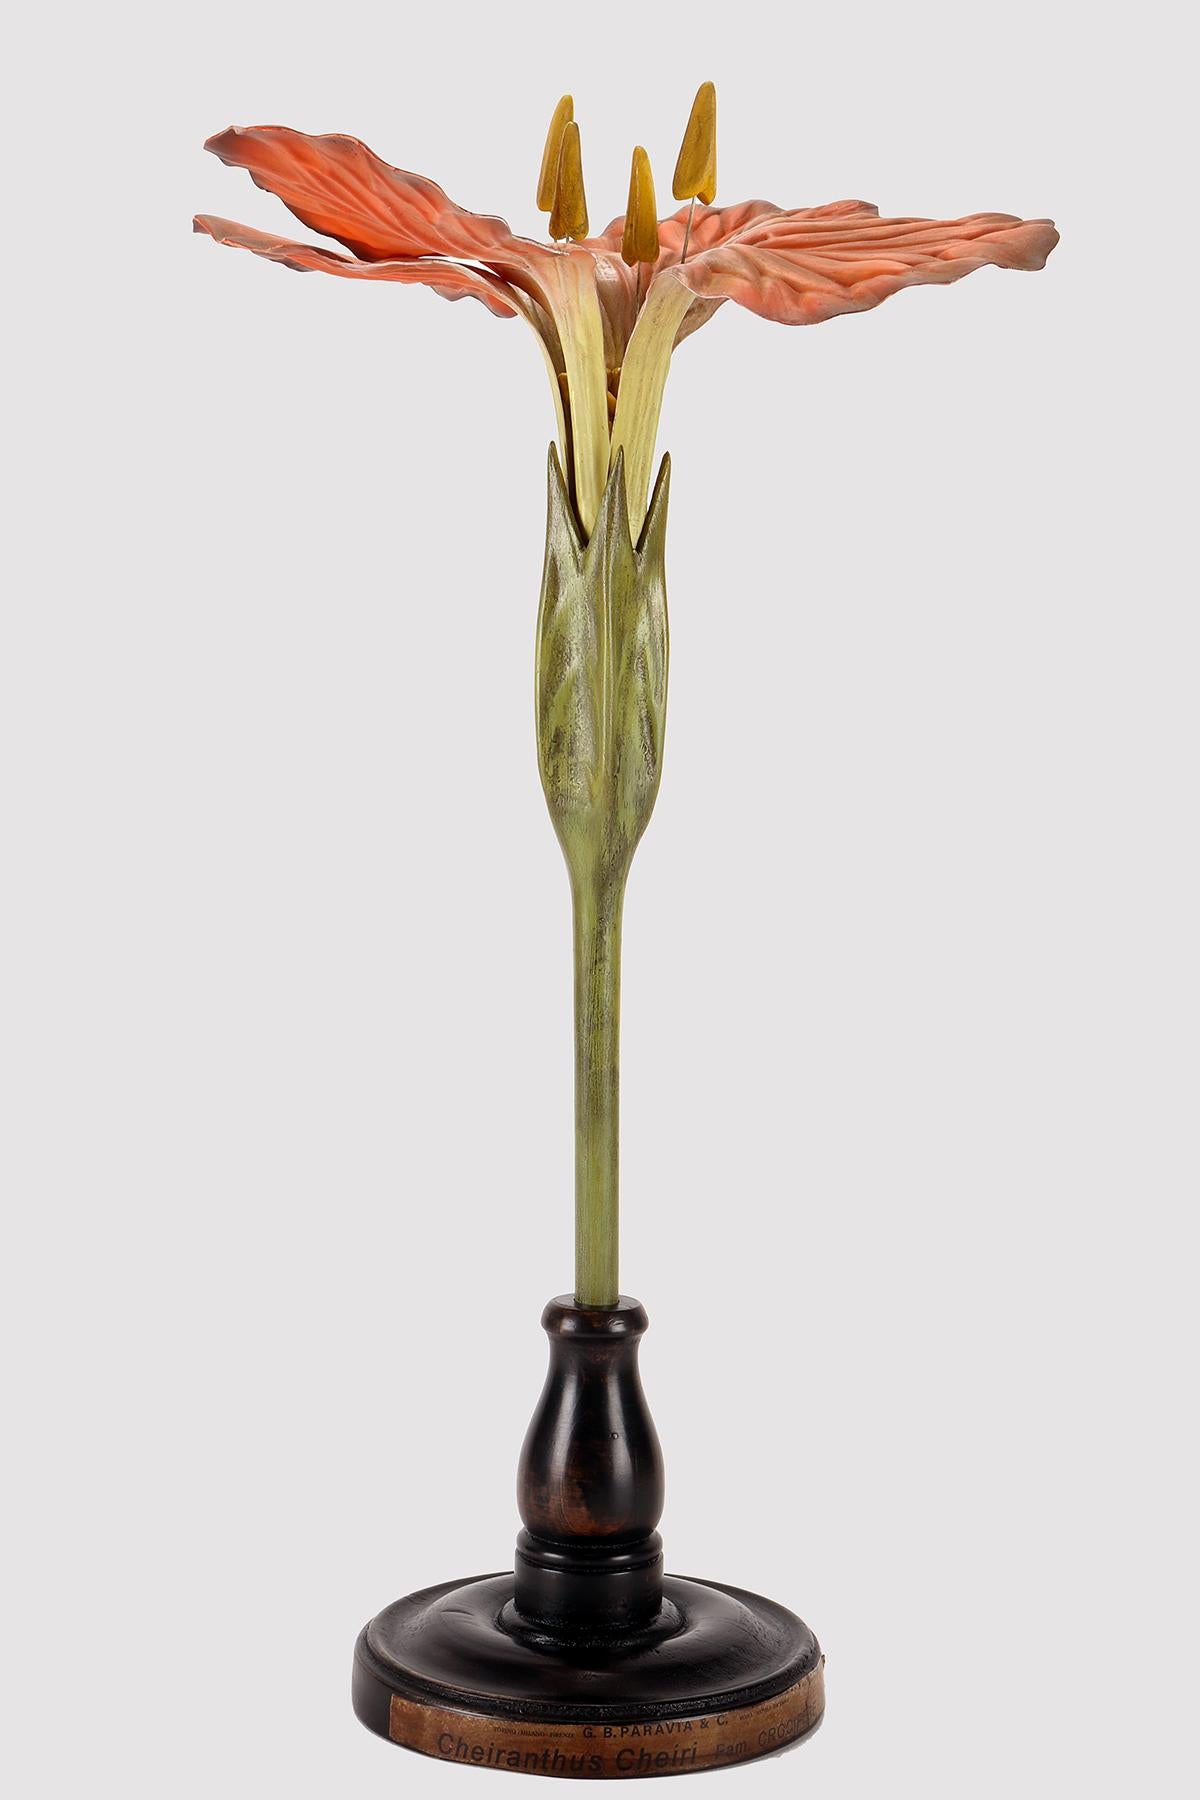 Maquette botanique à usage didactique, représentant une fleur d'oranger, Cheirantus Cheiris, crucifère. Réalisé en métal, papier, plâtre, galalithe et bois. Extrêmement détaillé. Paravia, Milan, Italie vers 1940.